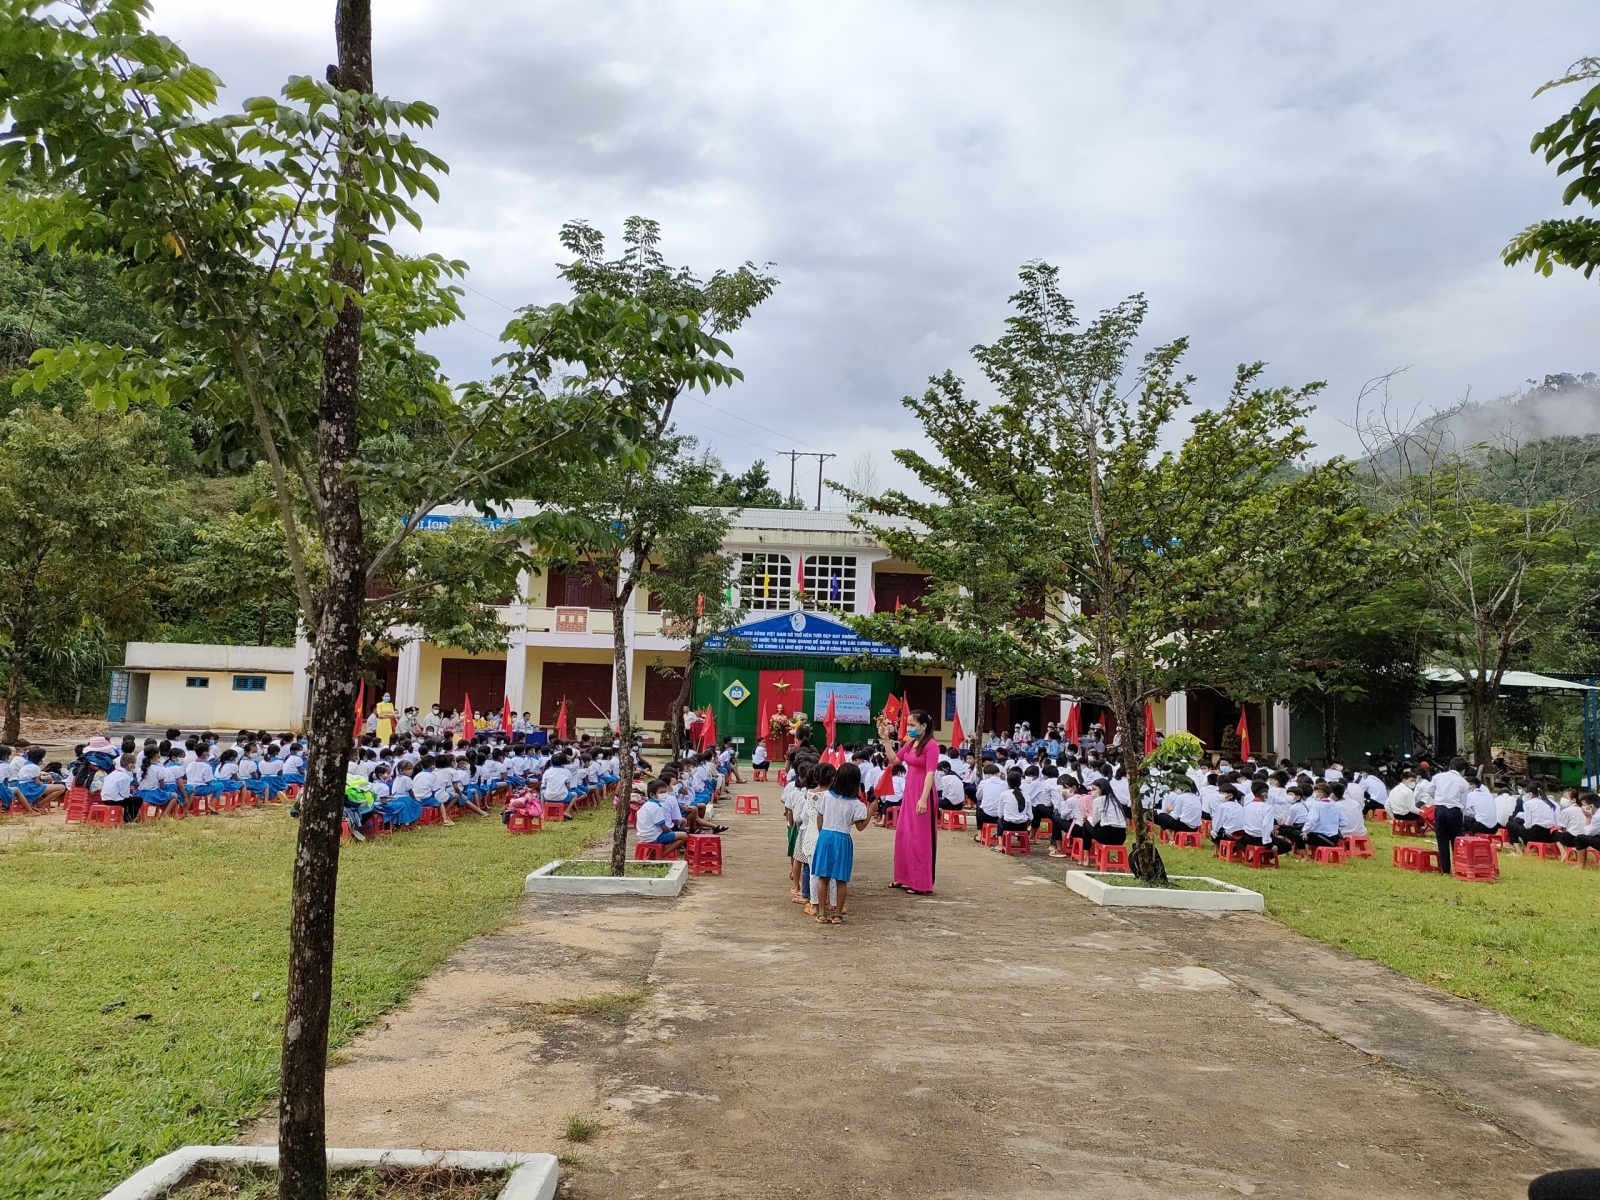 Năm học này Quảng Nam có 799 trường, giảm 4 trường so với cuối năm học 2019 - 2020.  Tính đến nay toàn tỉnh có 23.555 cán bộ, giáo viên. Trong đó, 1.751 cán bộ quản lý, 18.561 giáo viên, 3.39 nhân viên.